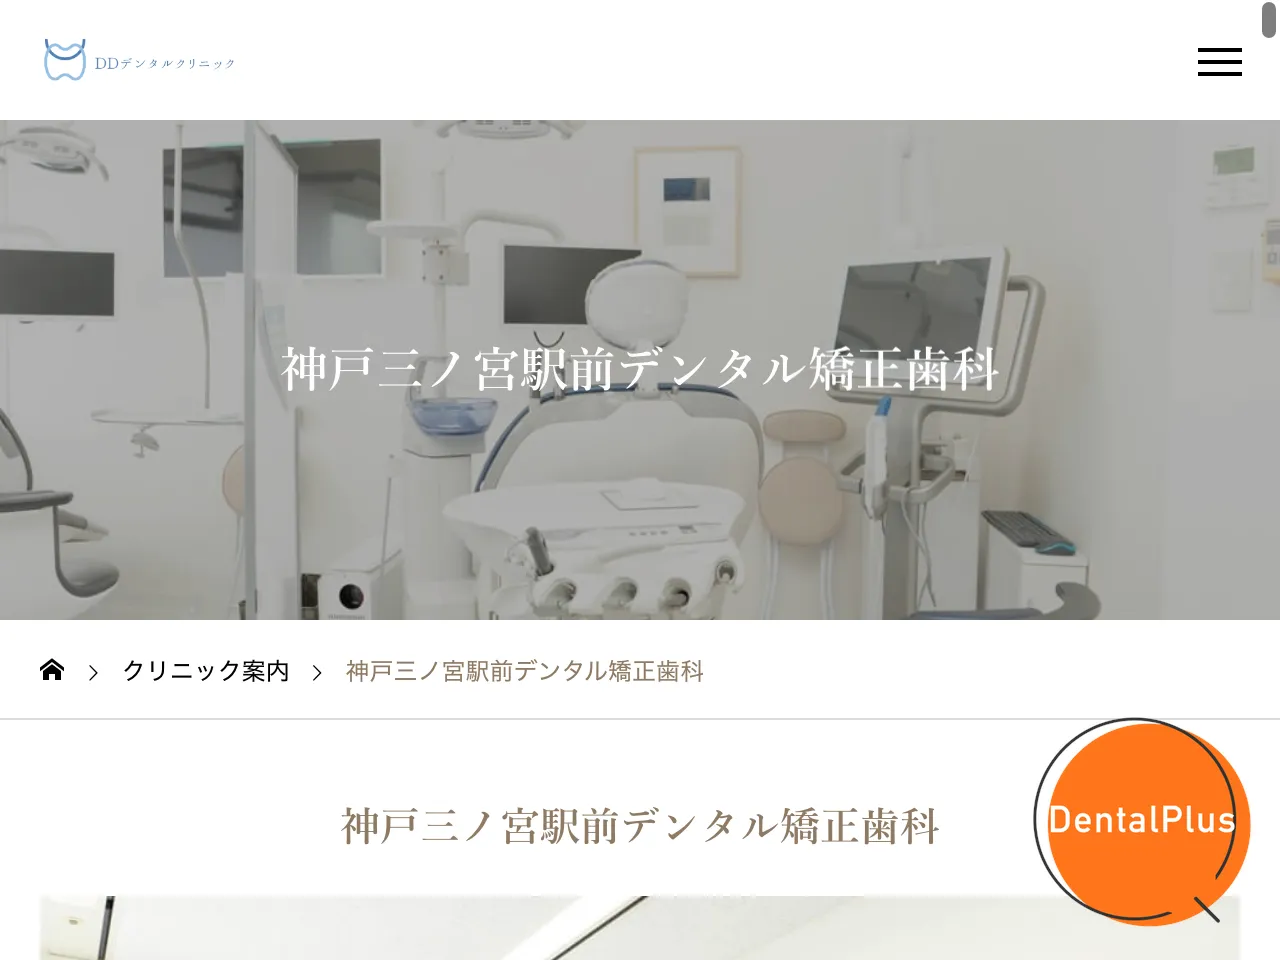 神戸三ノ宮駅前デンタル矯正歯科のウェブサイト